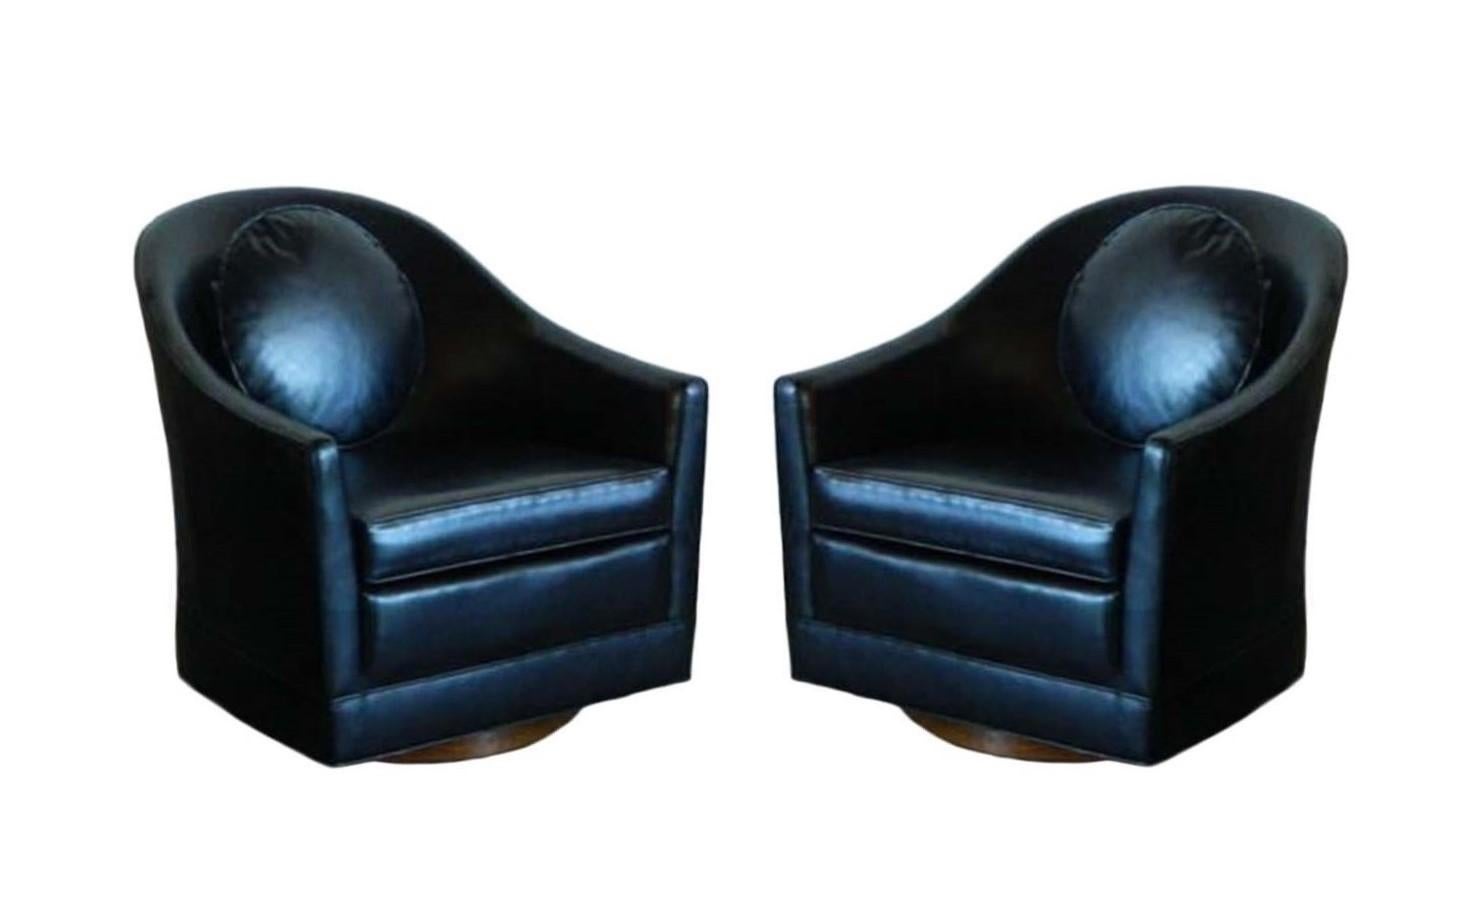 Ein Paar scharf geschnittene Club-/Lounge-Stühle von Harvey Probber, um 1950er Jahre. Die Stühle verfügen über tiefe Sitze mit losen Sitzkissen und umhüllenden Rückenlehnen, die eine gemütliche Umarmung bilden, während die Drehfunktion des Stuhls es